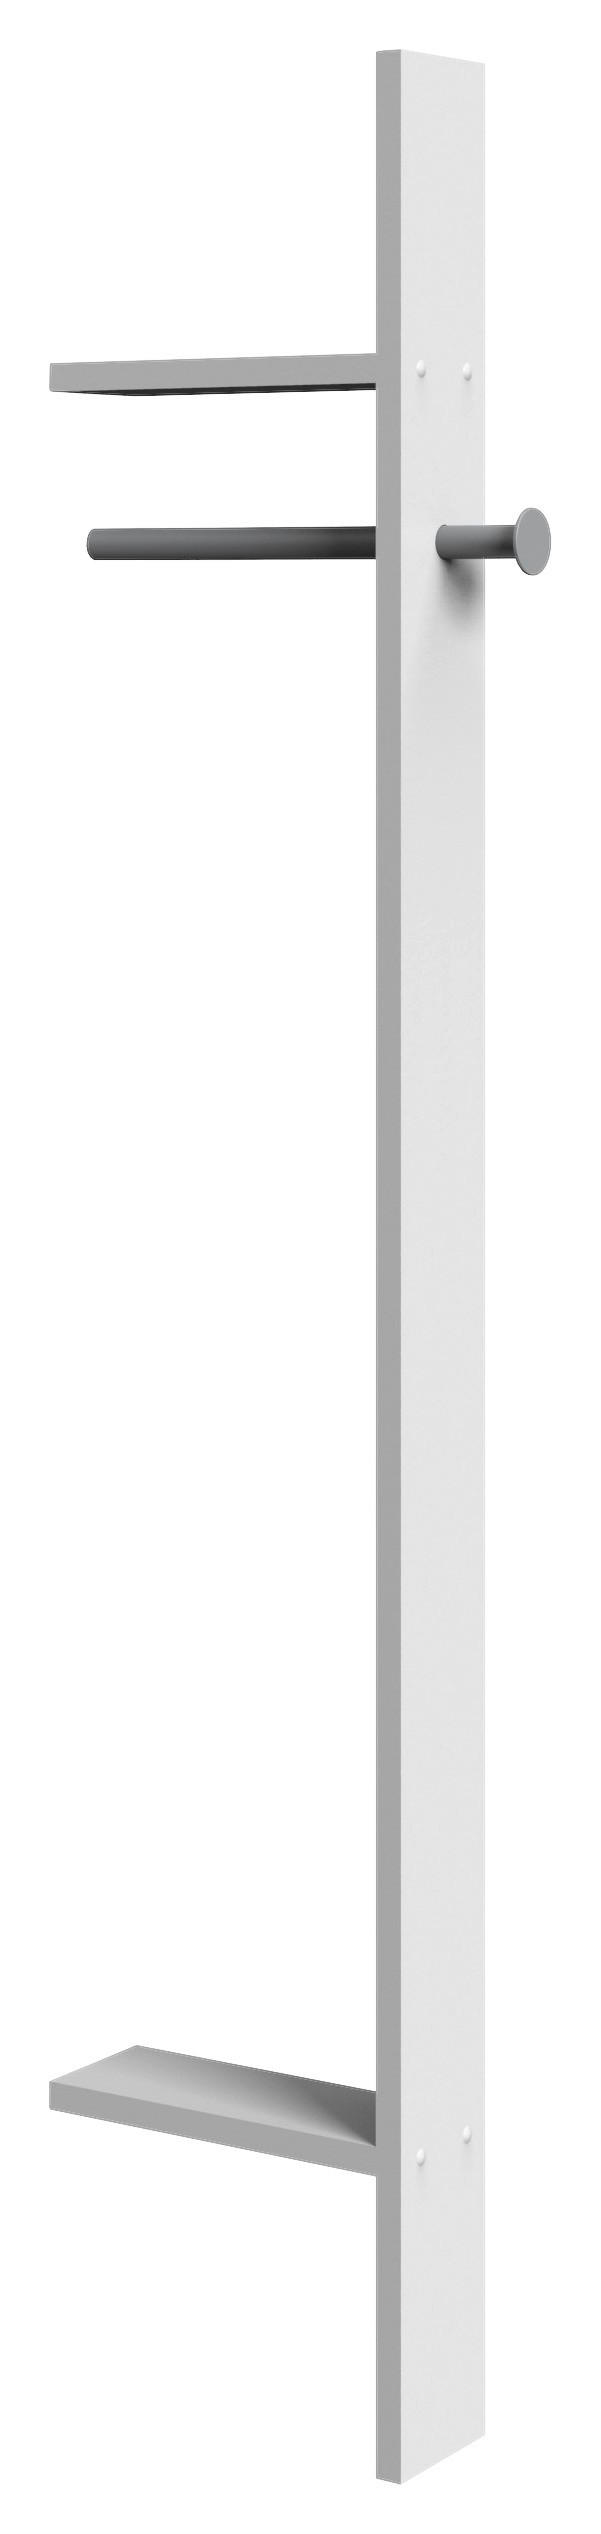 GARDEROBENPANEEL 32/179/12 cm  - Weiß, KONVENTIONELL (32/179/12cm) - Carryhome